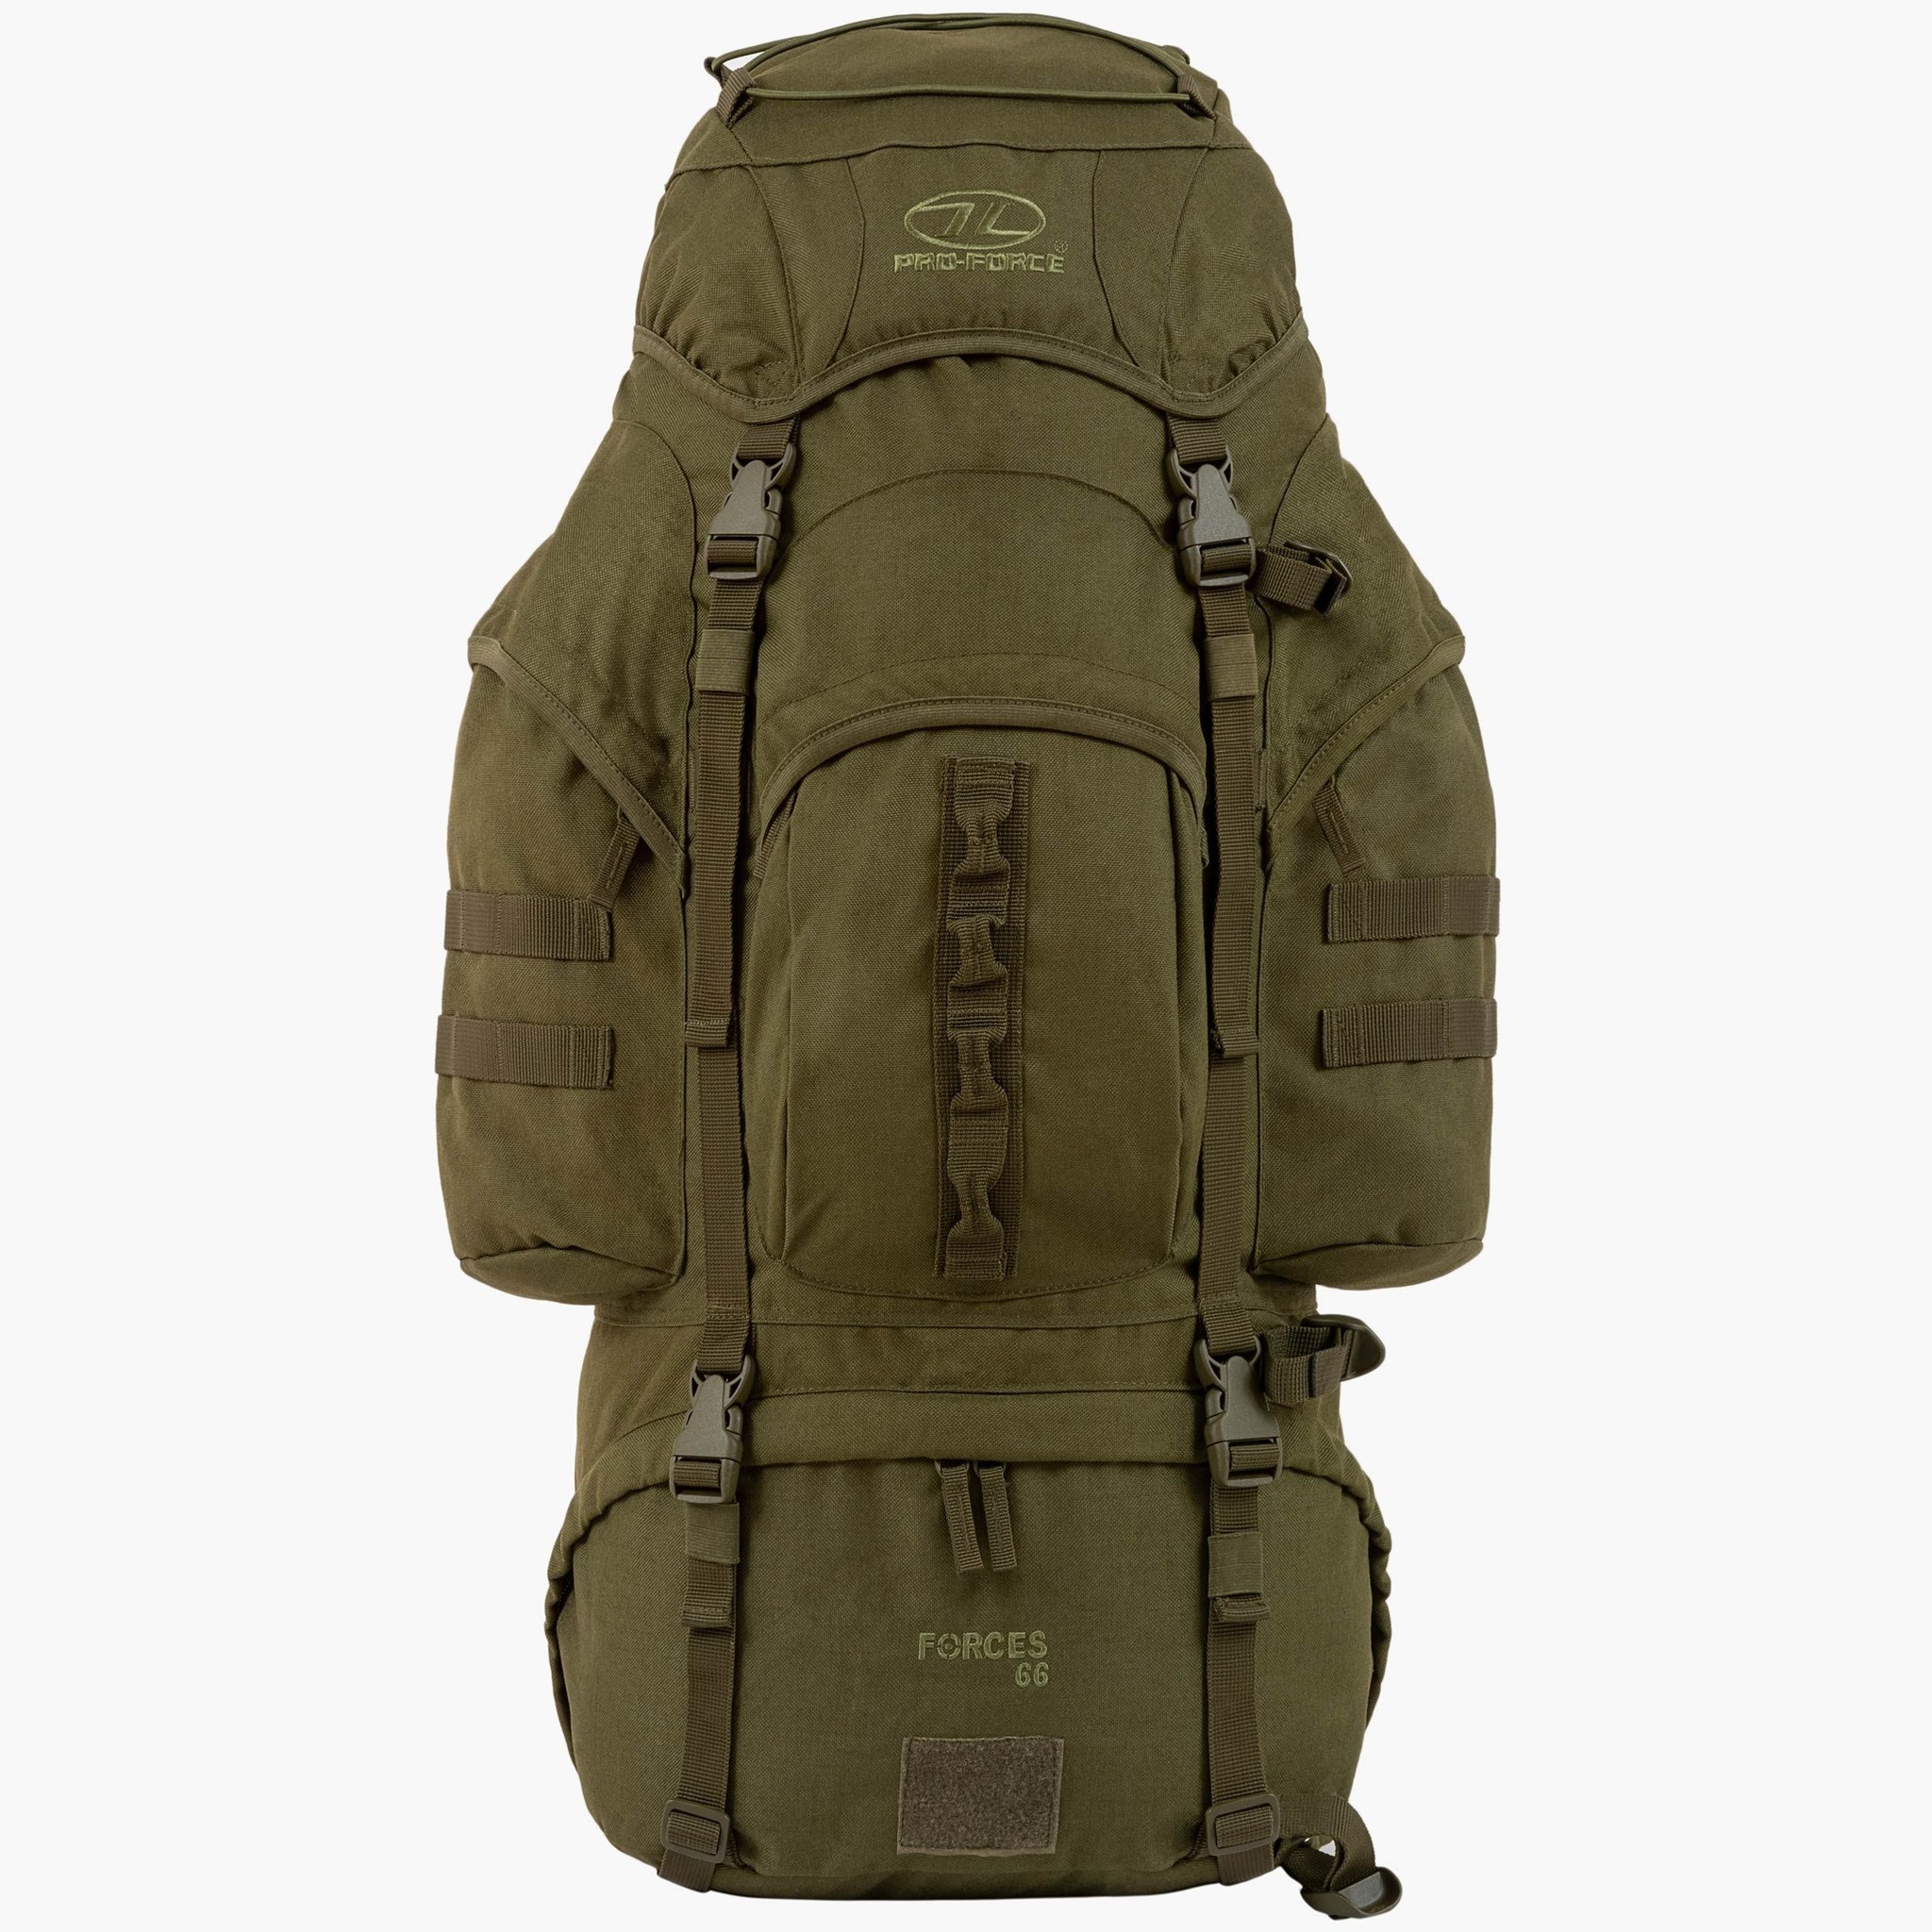 Highlander New Forces 66l backpack